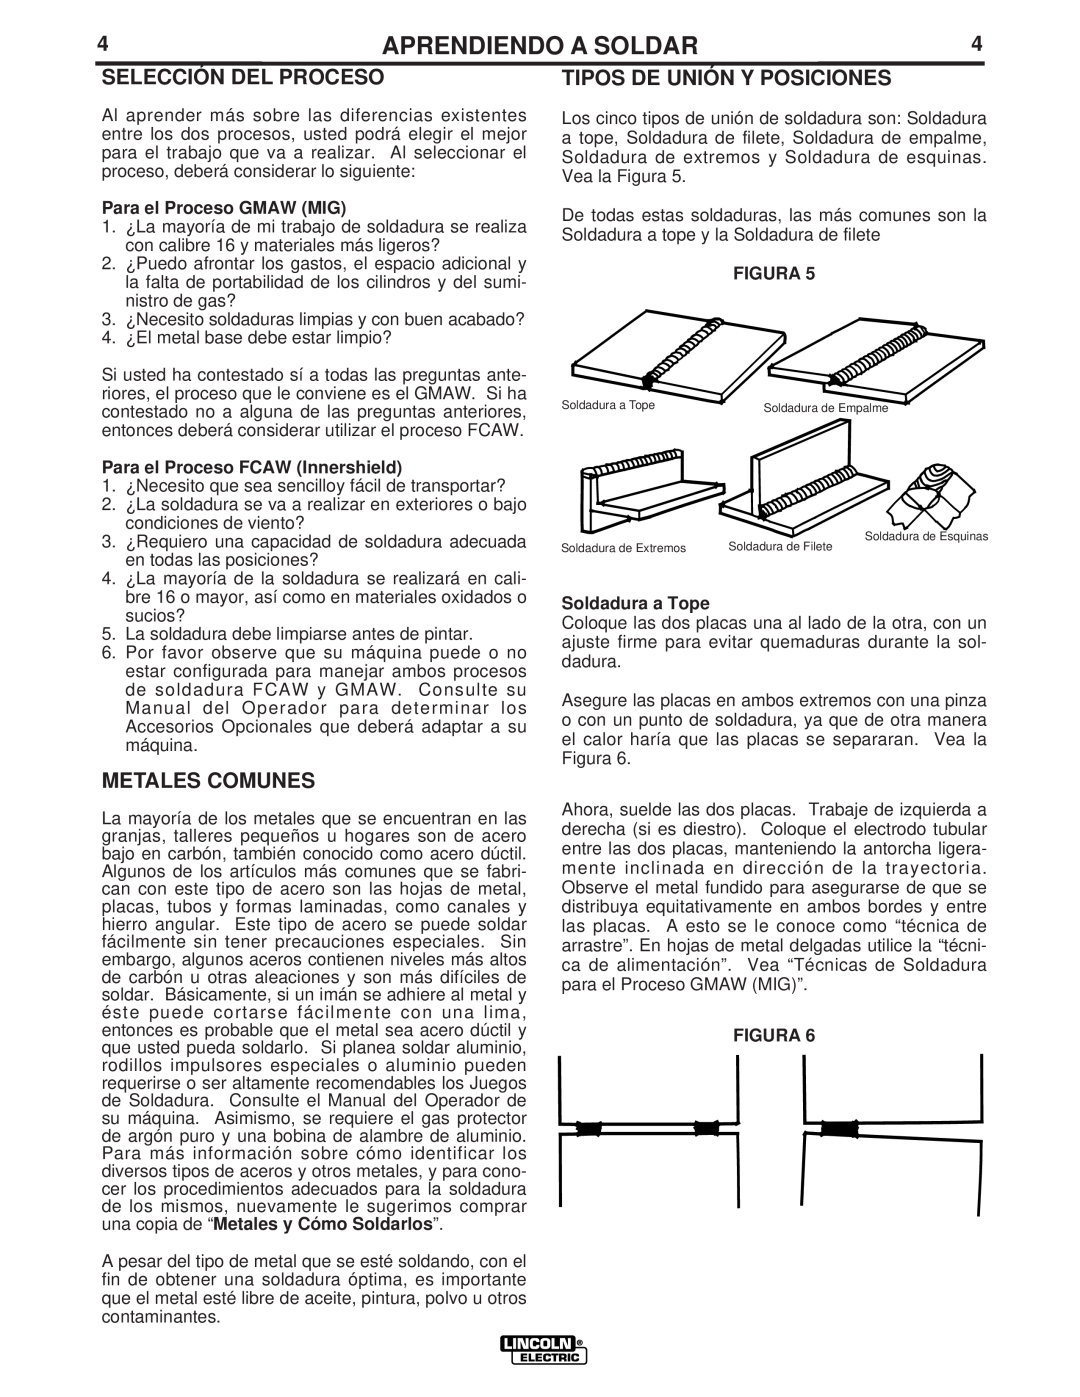 Lincoln Electric LTW1 manual Selección Del Proceso, Metales Comunes, Tipos De Unión Y Posiciones, Para el Proceso GMAW MIG 